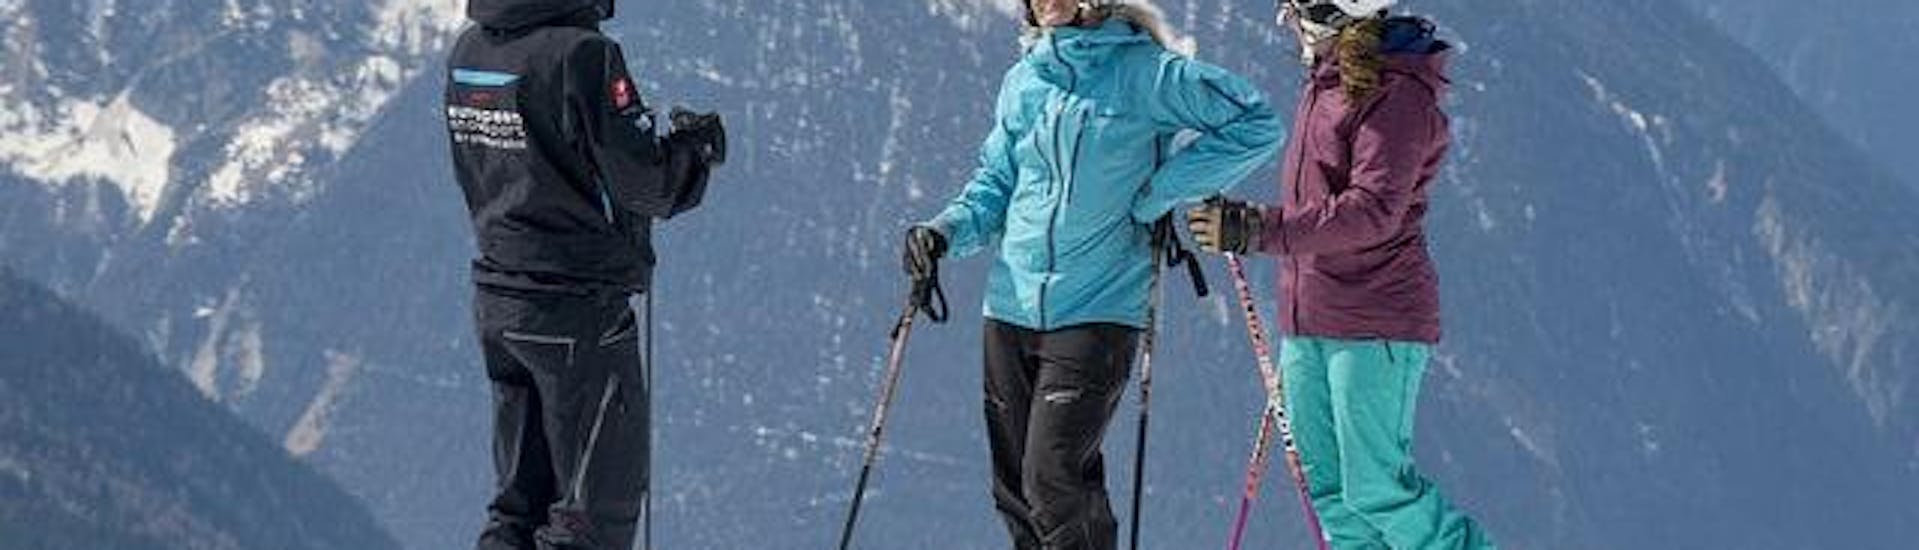 Privater Skikurs für Erwachsene aller Levels - Nebensaison.